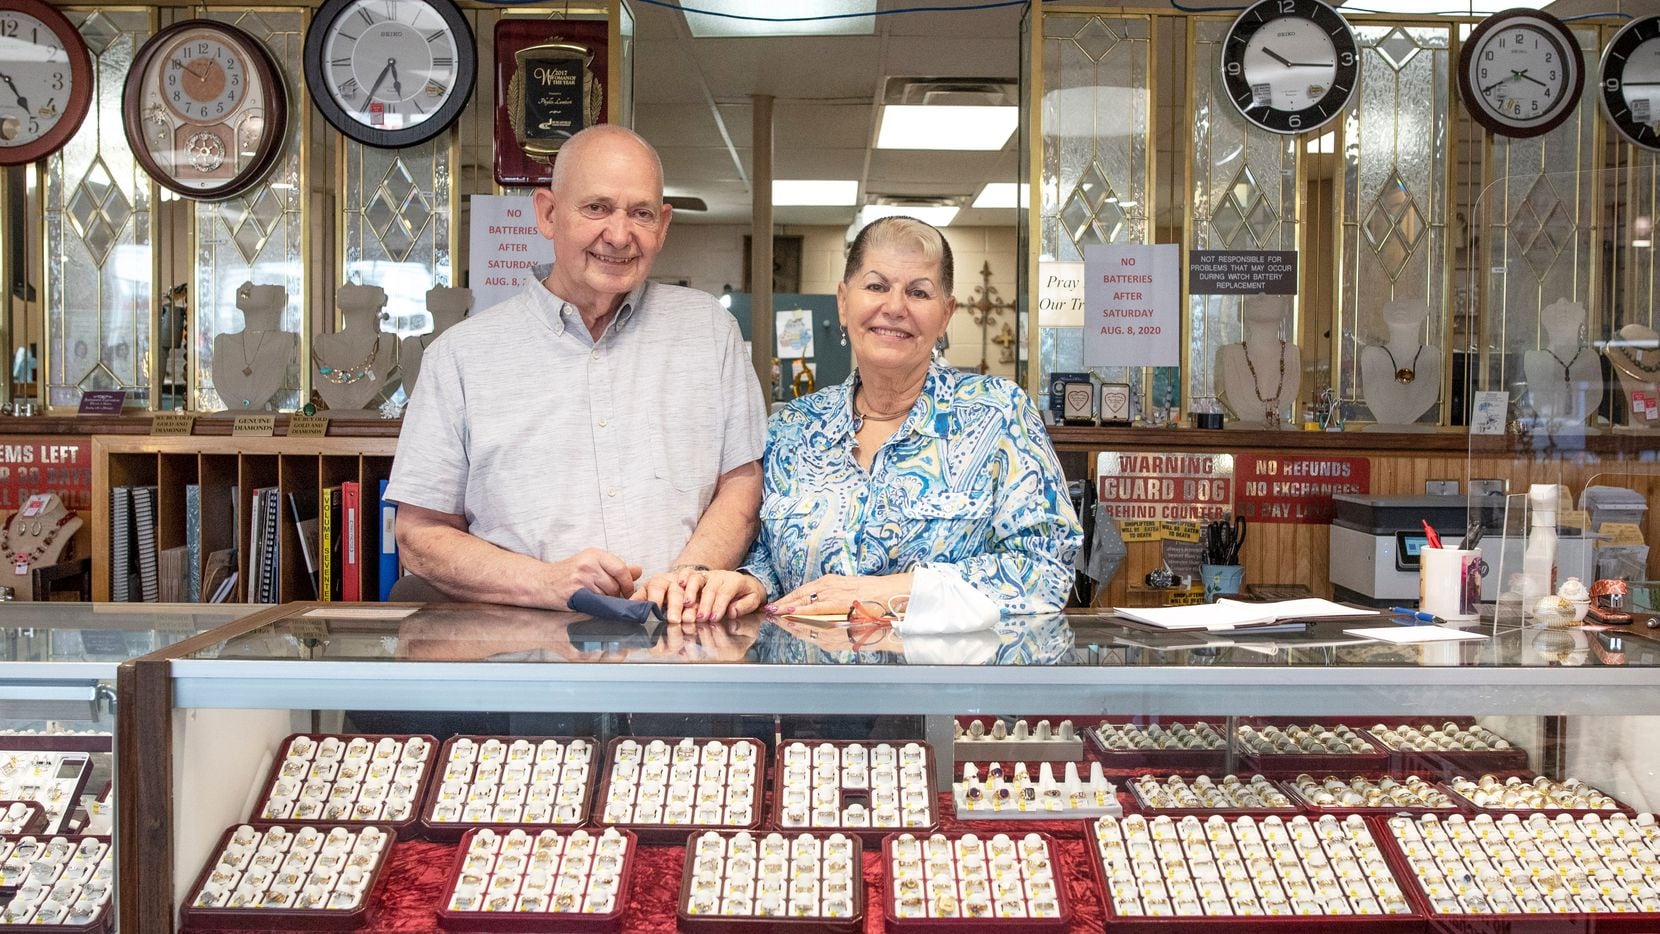 Phyllis Lambert, dueña de Gold N Things, junto a su esposo John, en el mostrador de su negocio de joyería en Duncanville, que ha optado por cerrar debido a la pandemia. "Somos un lujo, no una necesidad", reconocen.